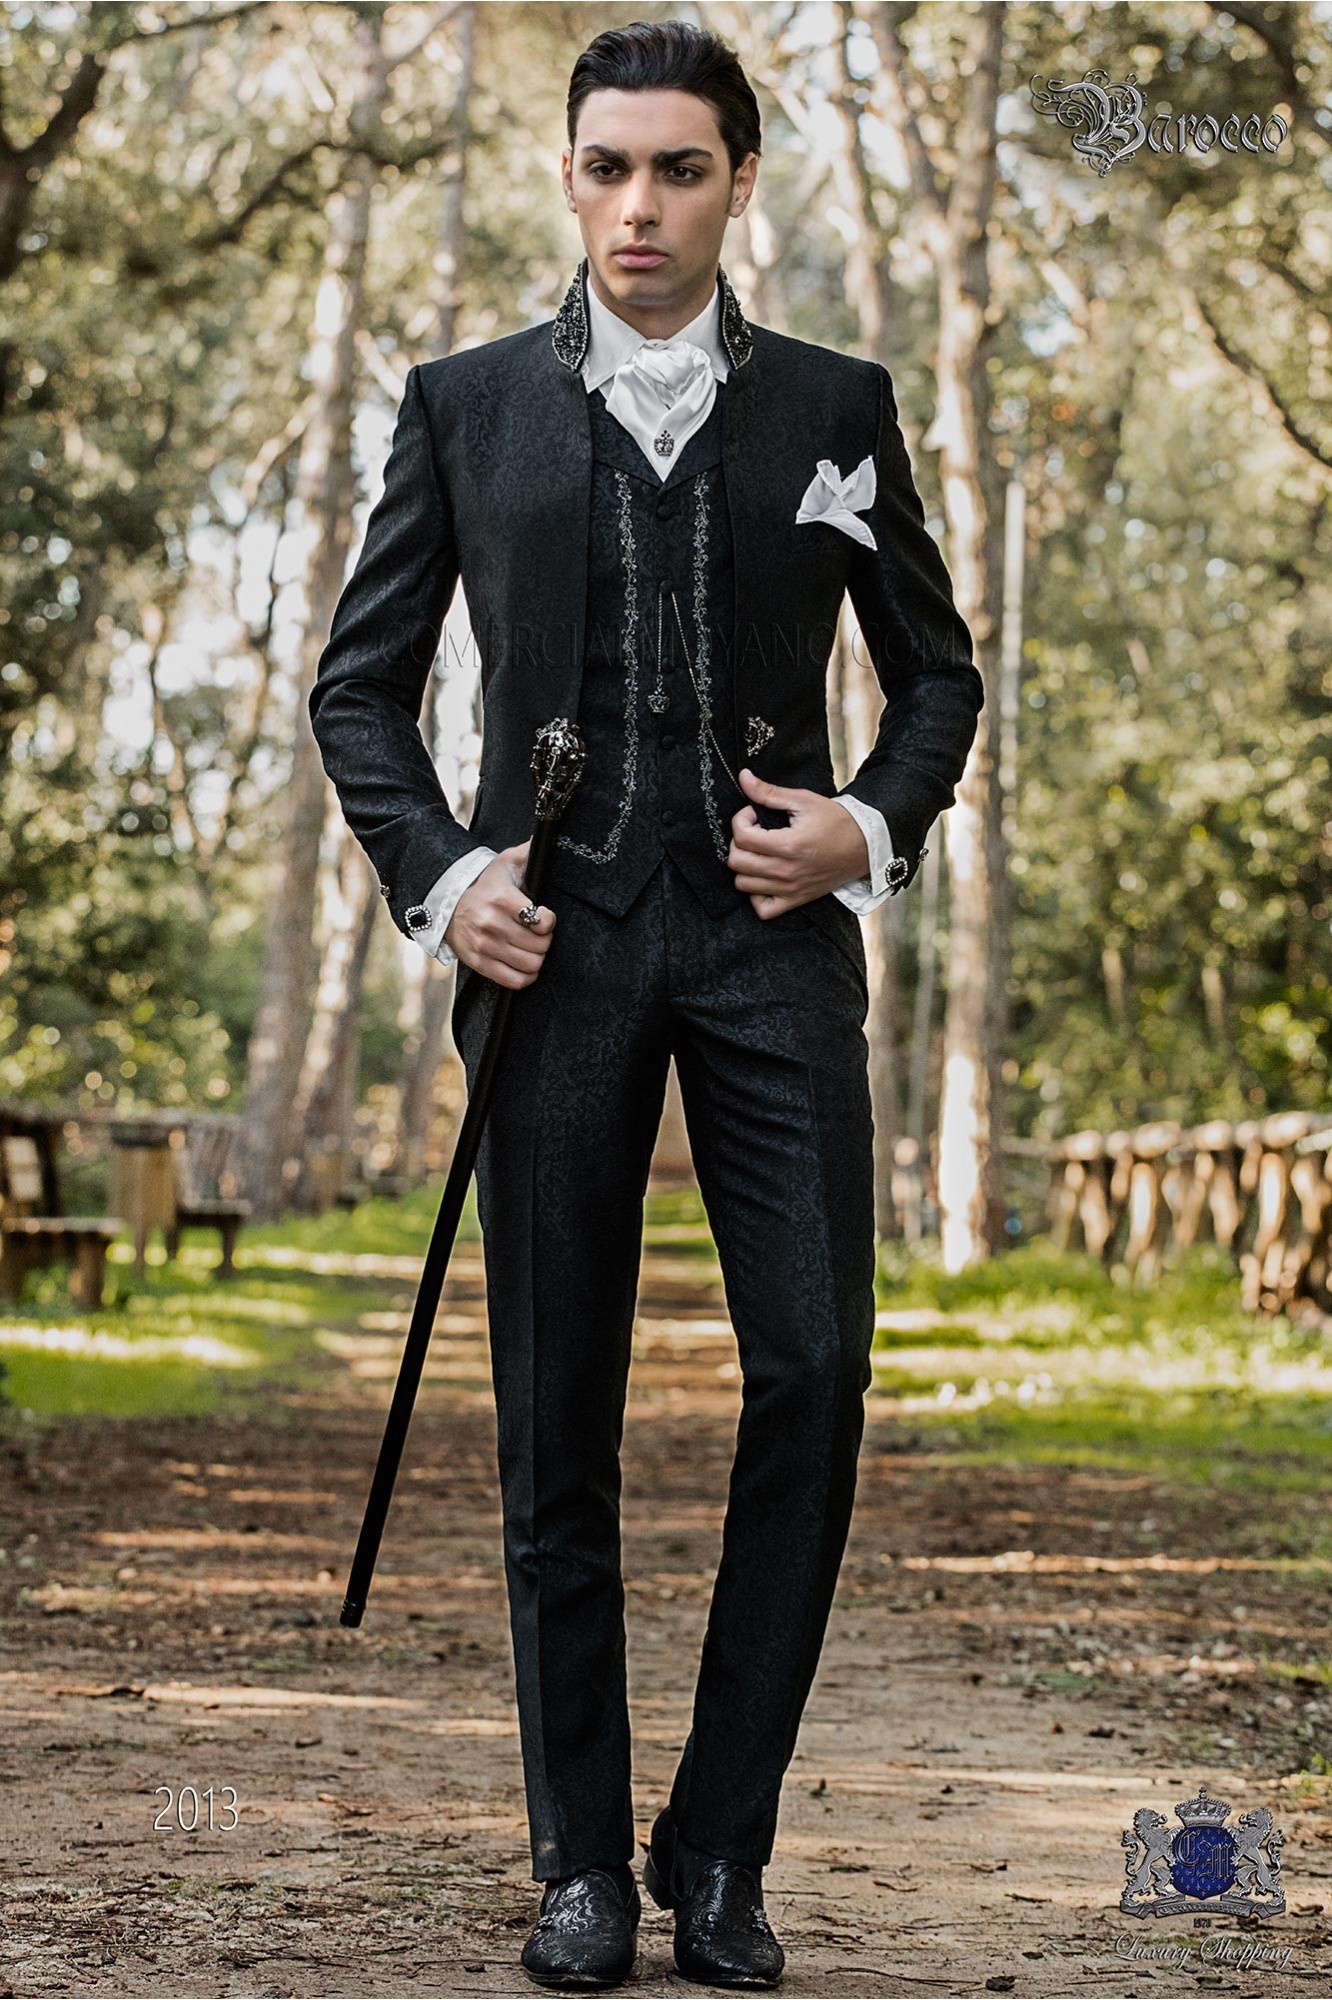 Vintage Men wedding frock coat in black brocade fabric with Mao collar with black rhinestones model 2013 Mario Moyano